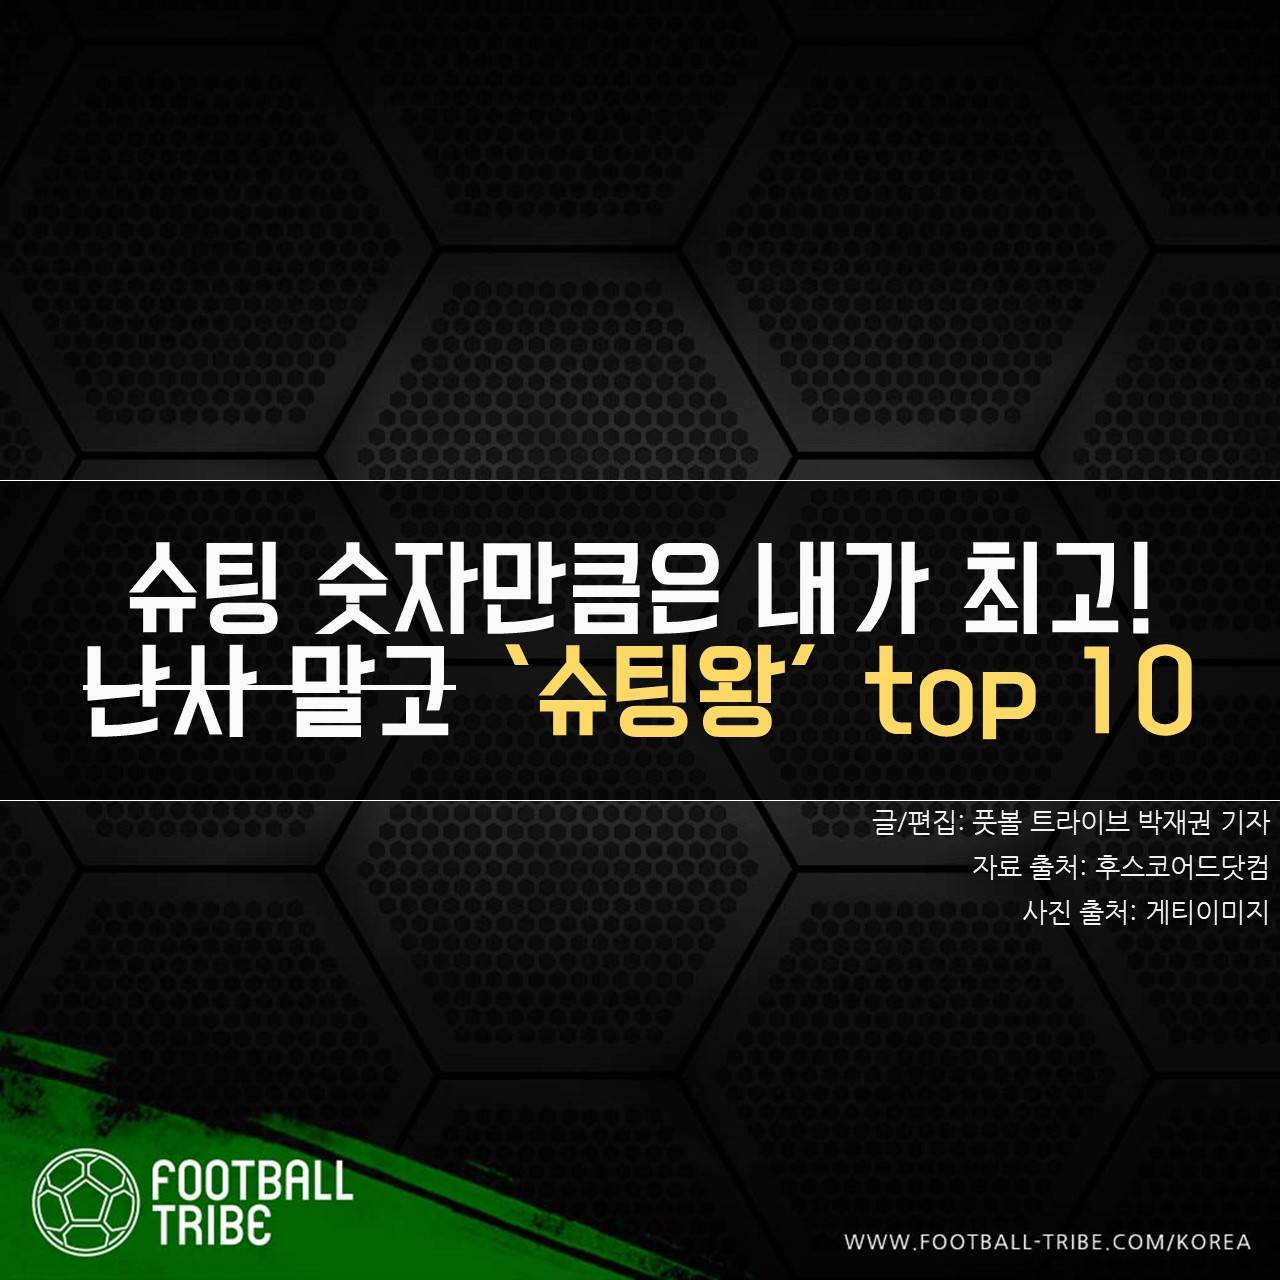 [카드 뉴스] 월드컵 1차전, 난사 말고 슈팅왕 TOP 10